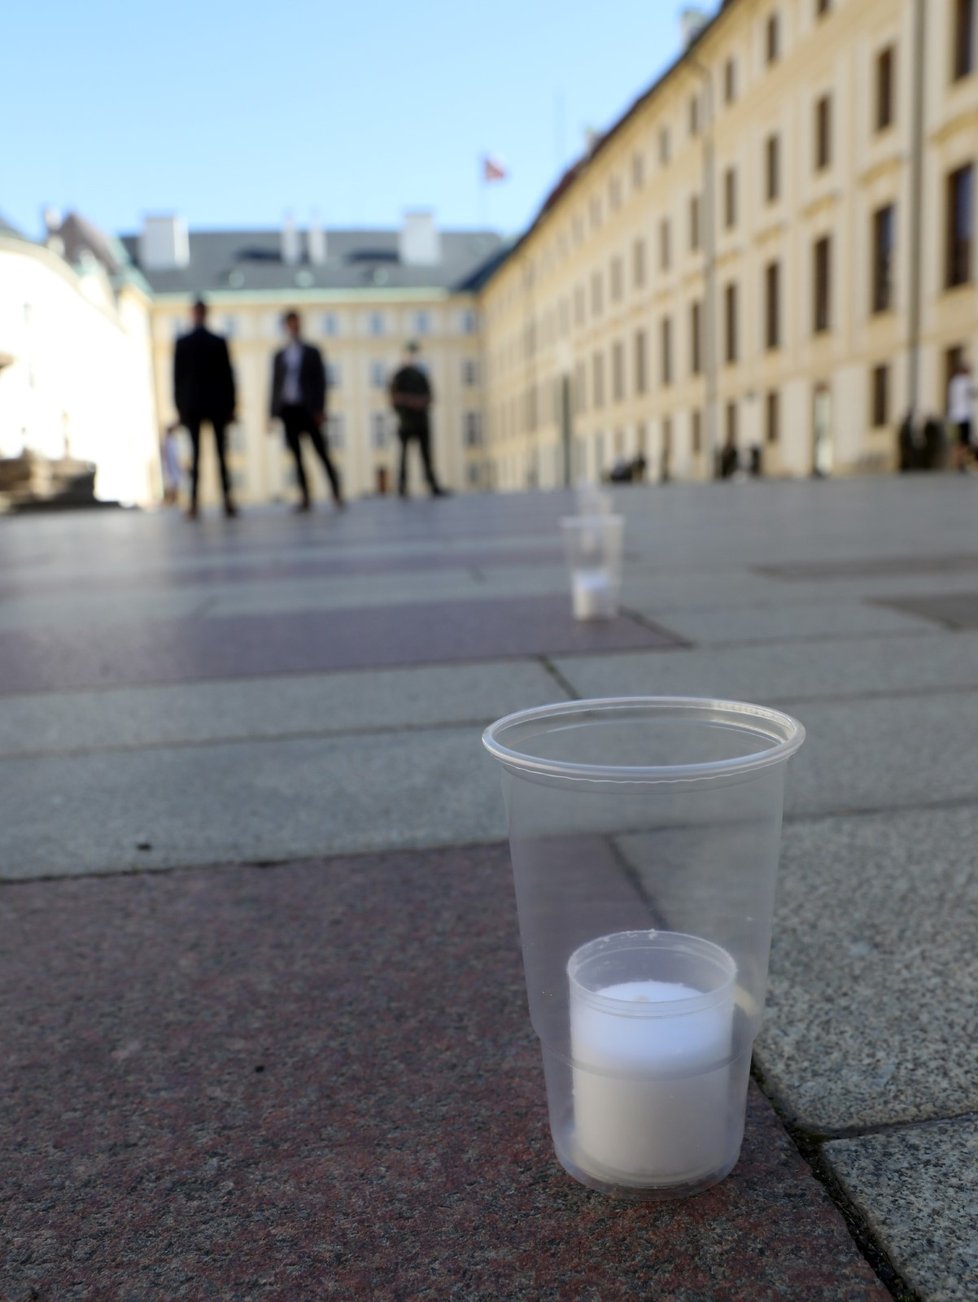 Přípravy pietní akce za oběti koronaviru na Pražském hradě. Během pietního aktu se bude na nádvořích zapáleno téměř 30 000 svíček.